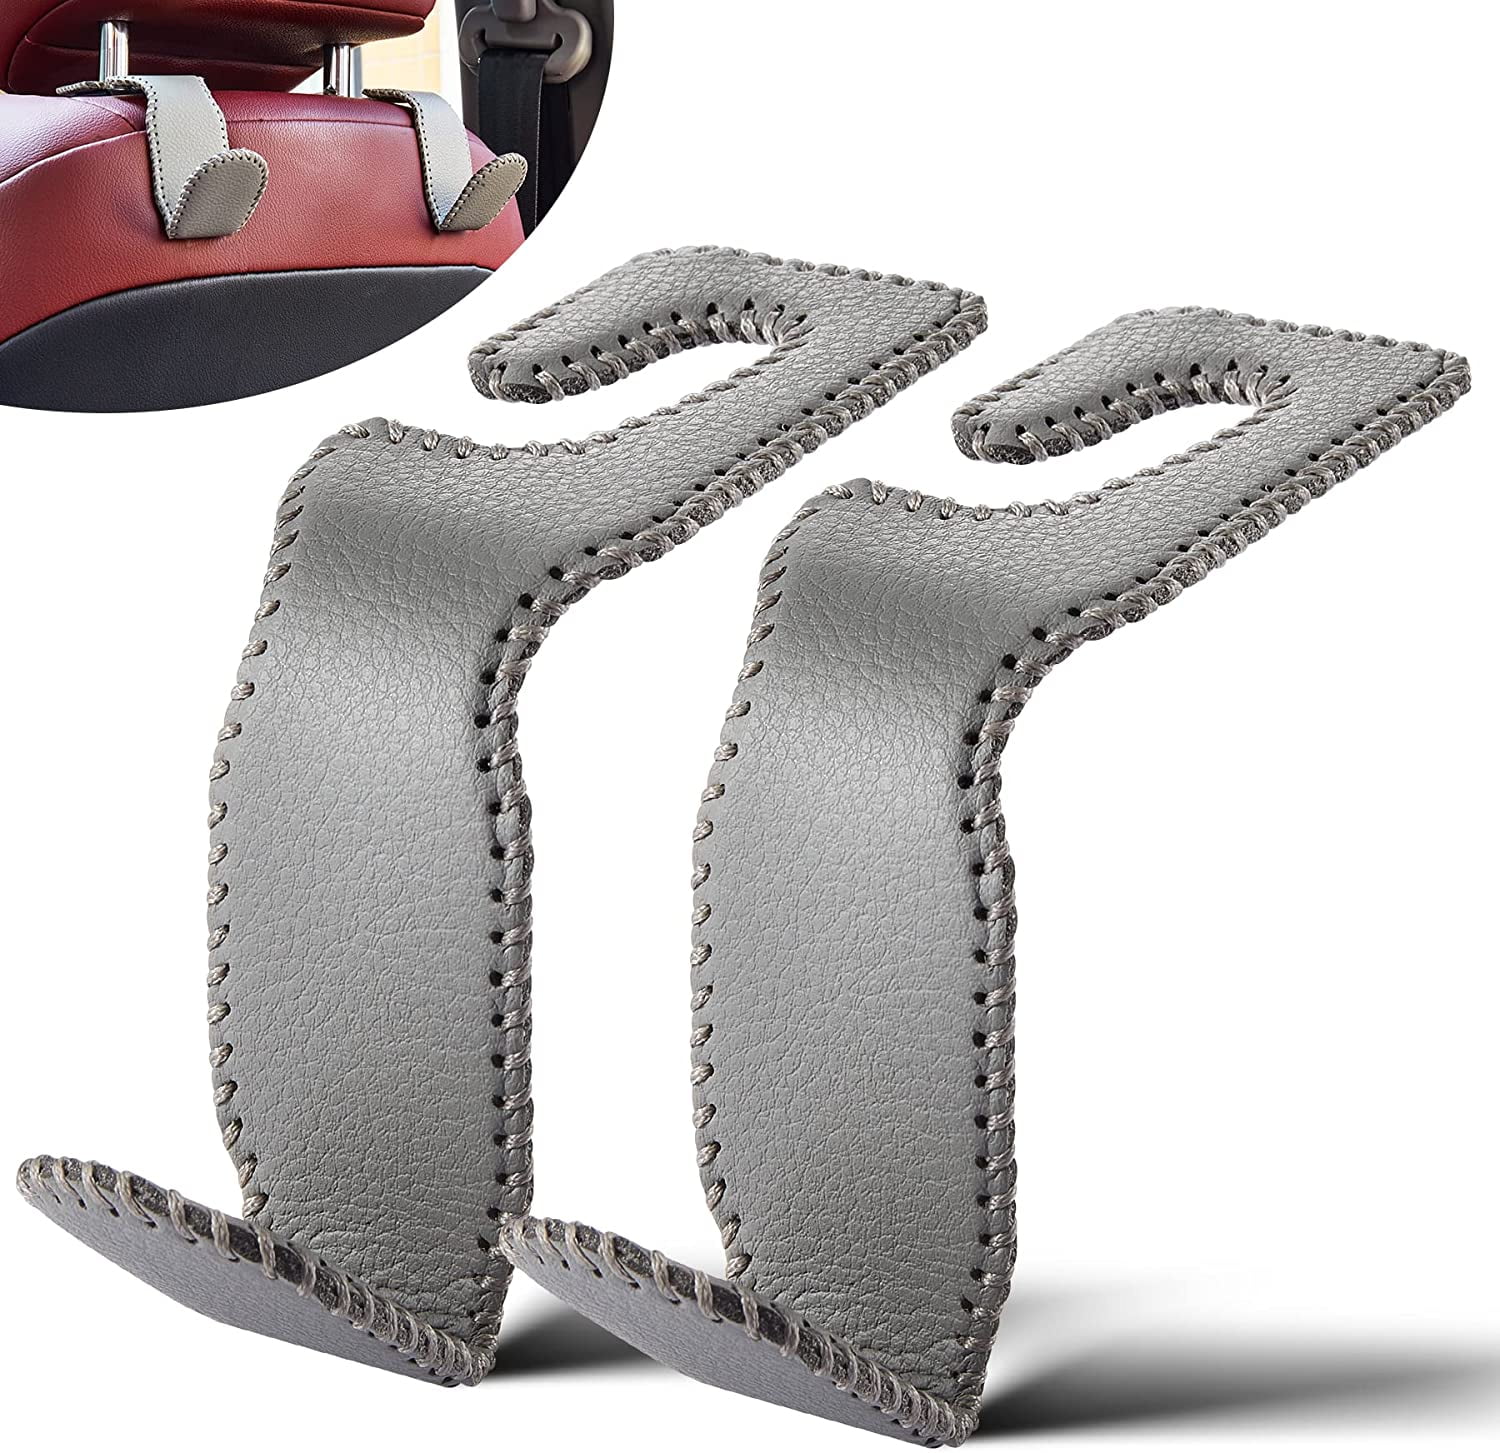 2 Pcs Car Seat Headrest Hook Backseat Purse Hanger Bag Cloth Hanging Holder  US - Plugsus Home Furniture